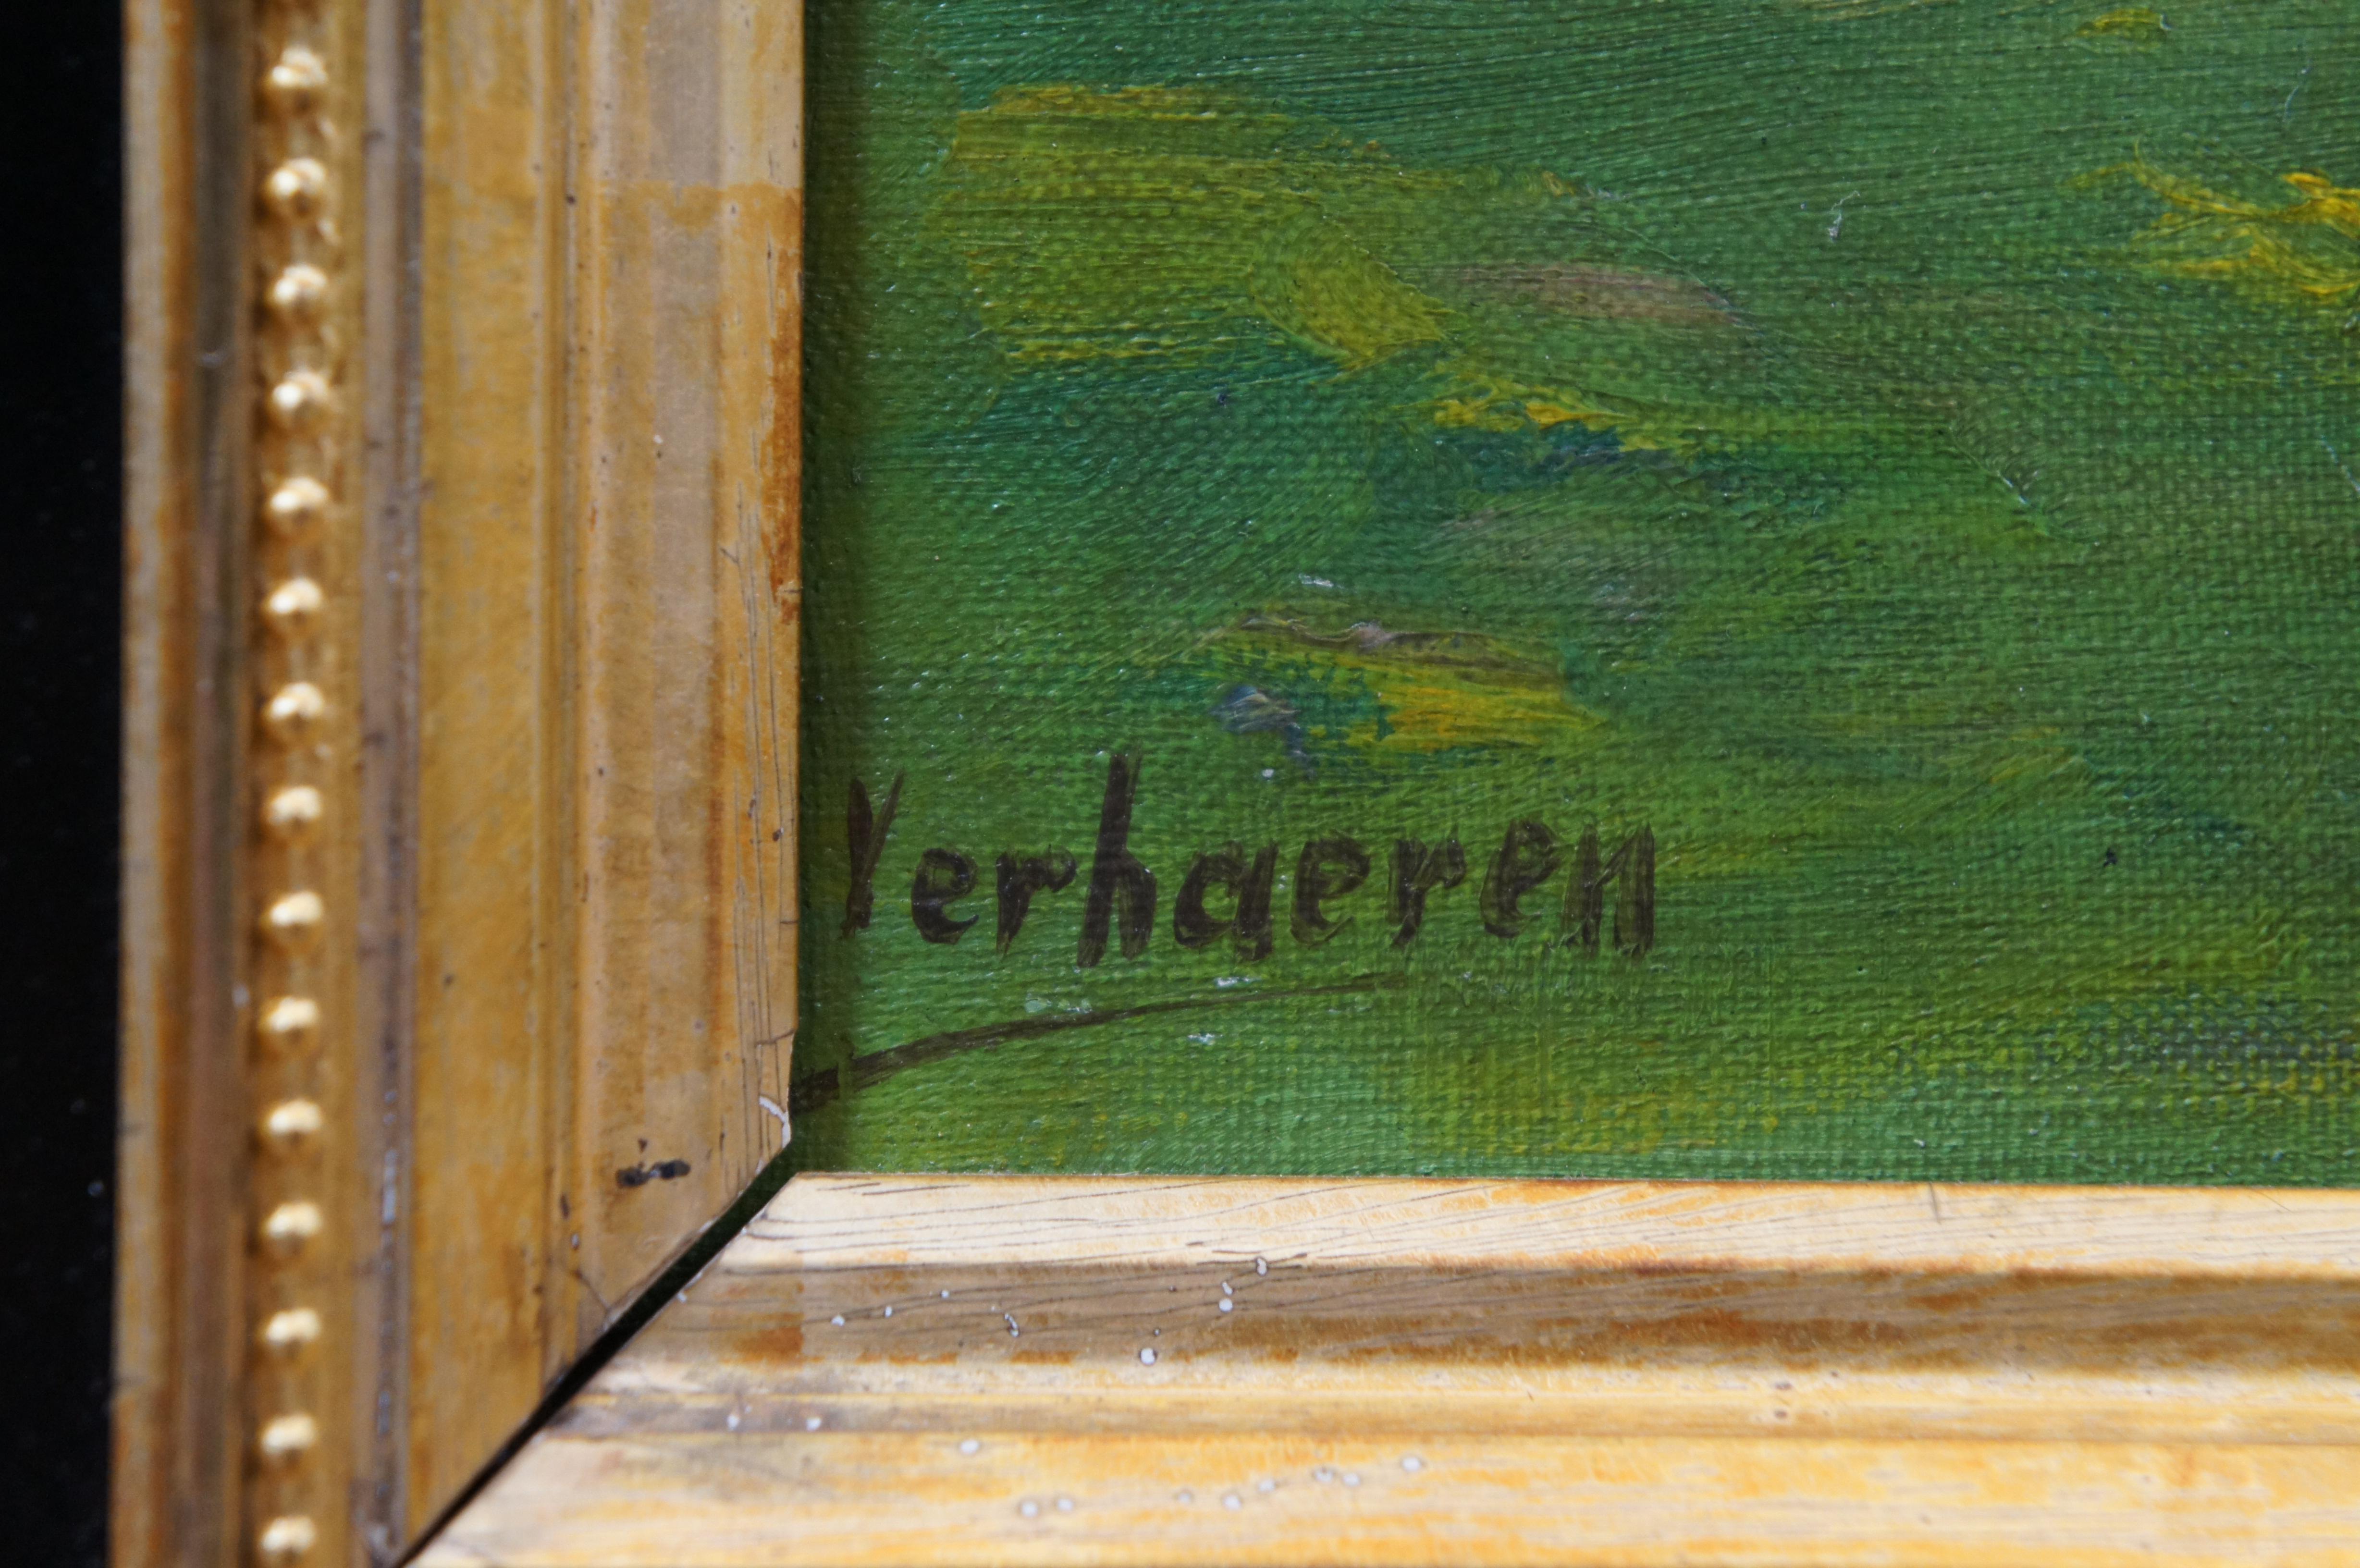 Carolus Verhaeren 1908-1956 paysage côtier peinture à l'huile sur toile 36